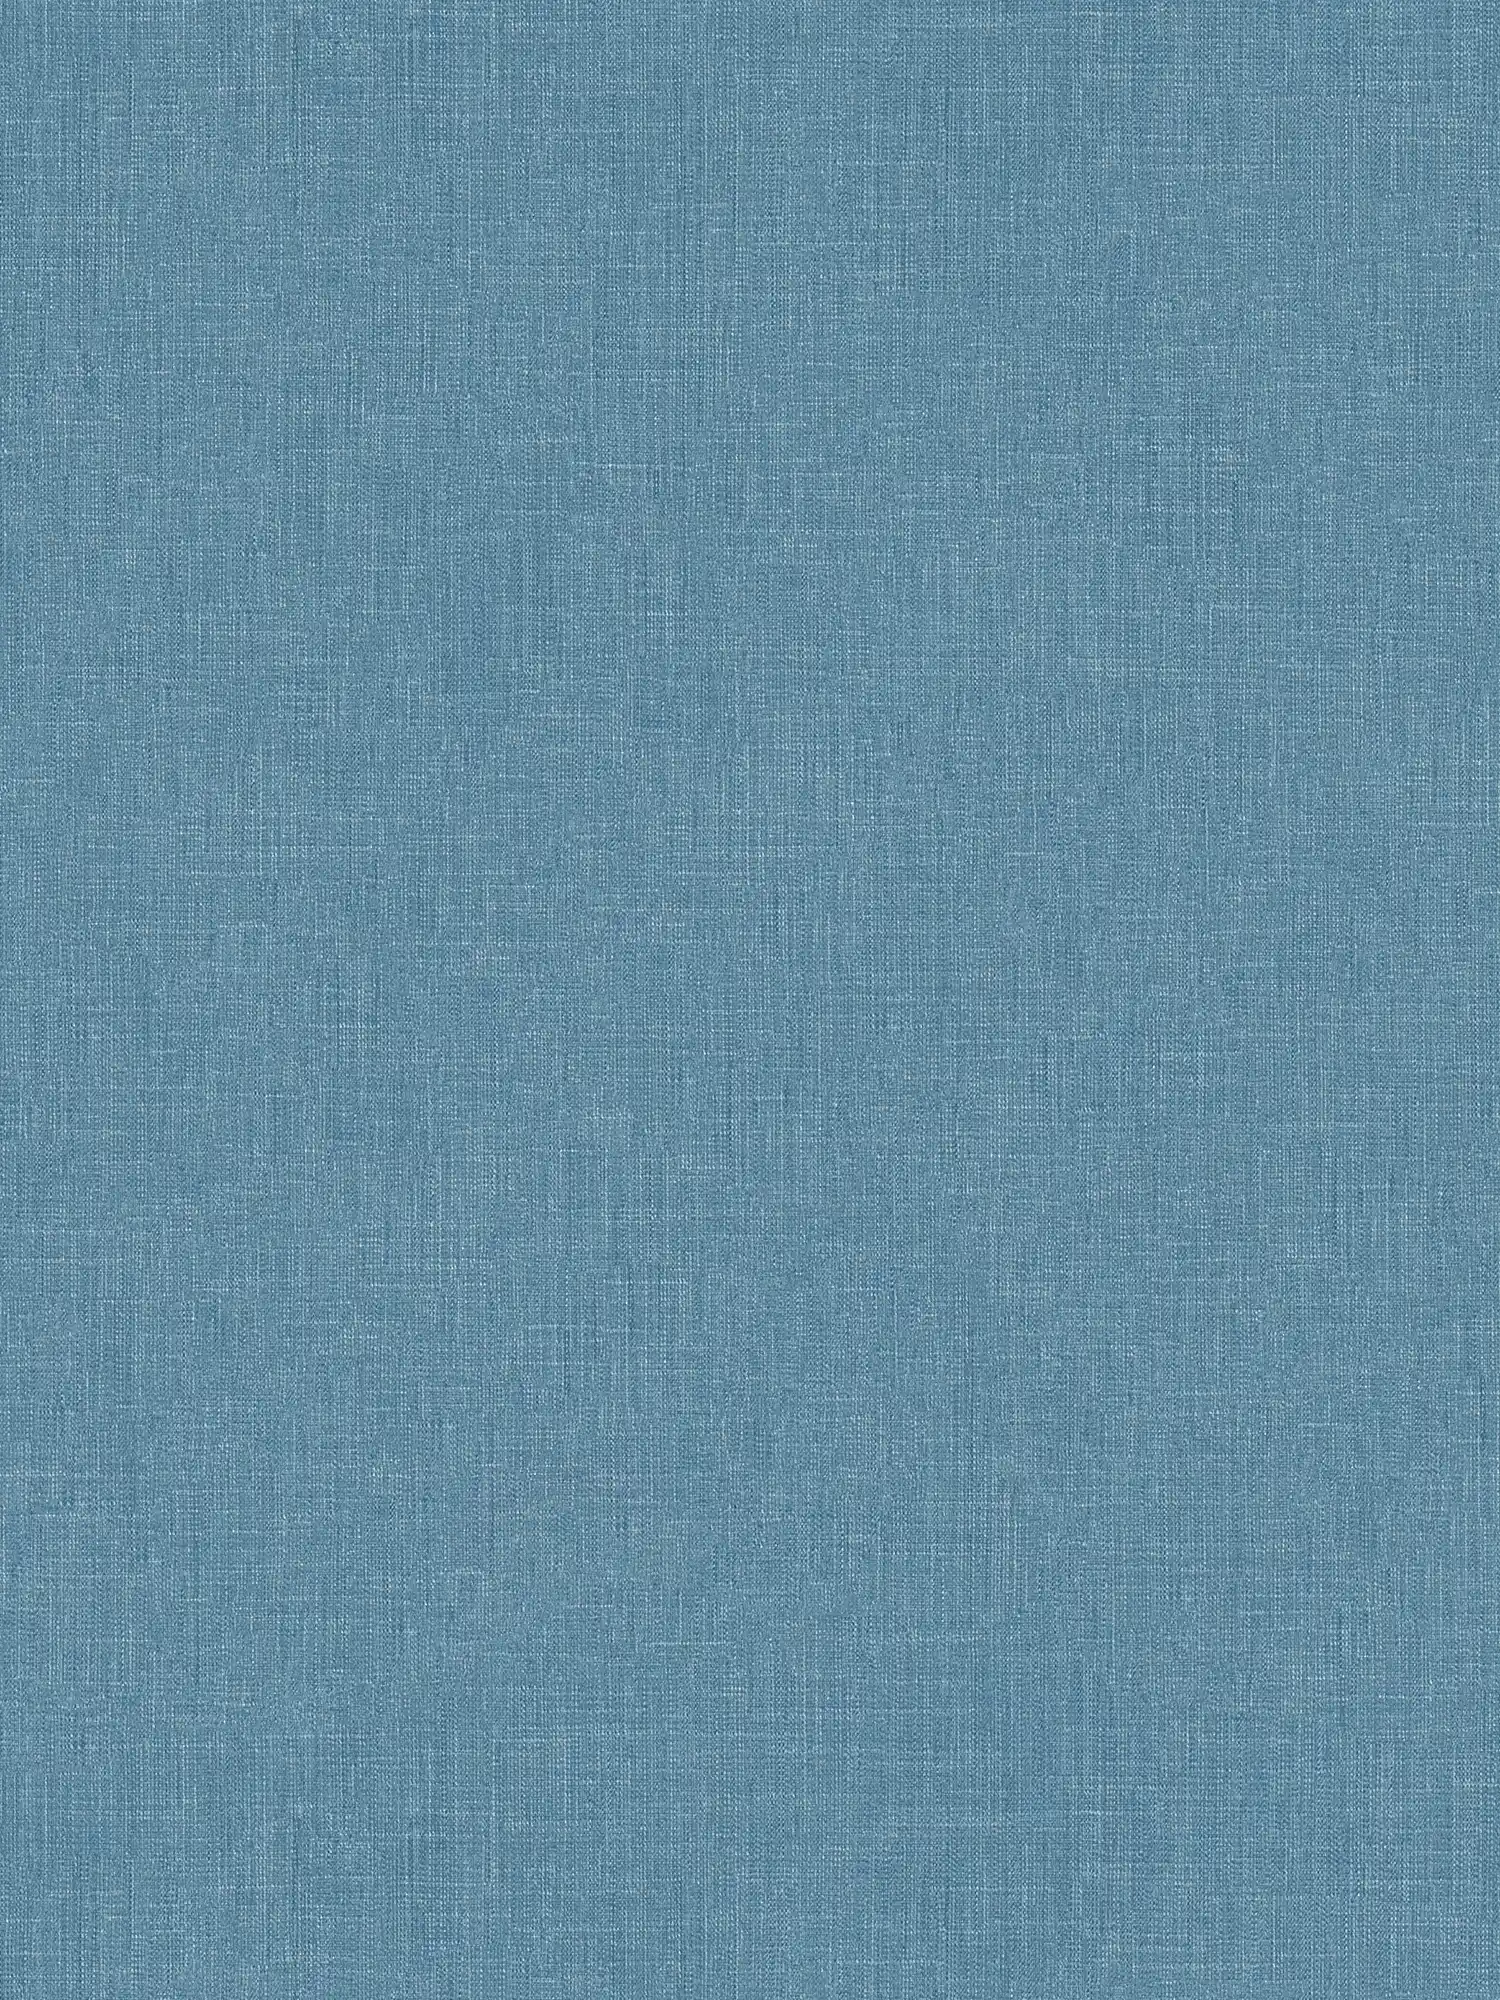 Papel pintado azul petróleo con diseño textil moteado de aspecto escandinavo
